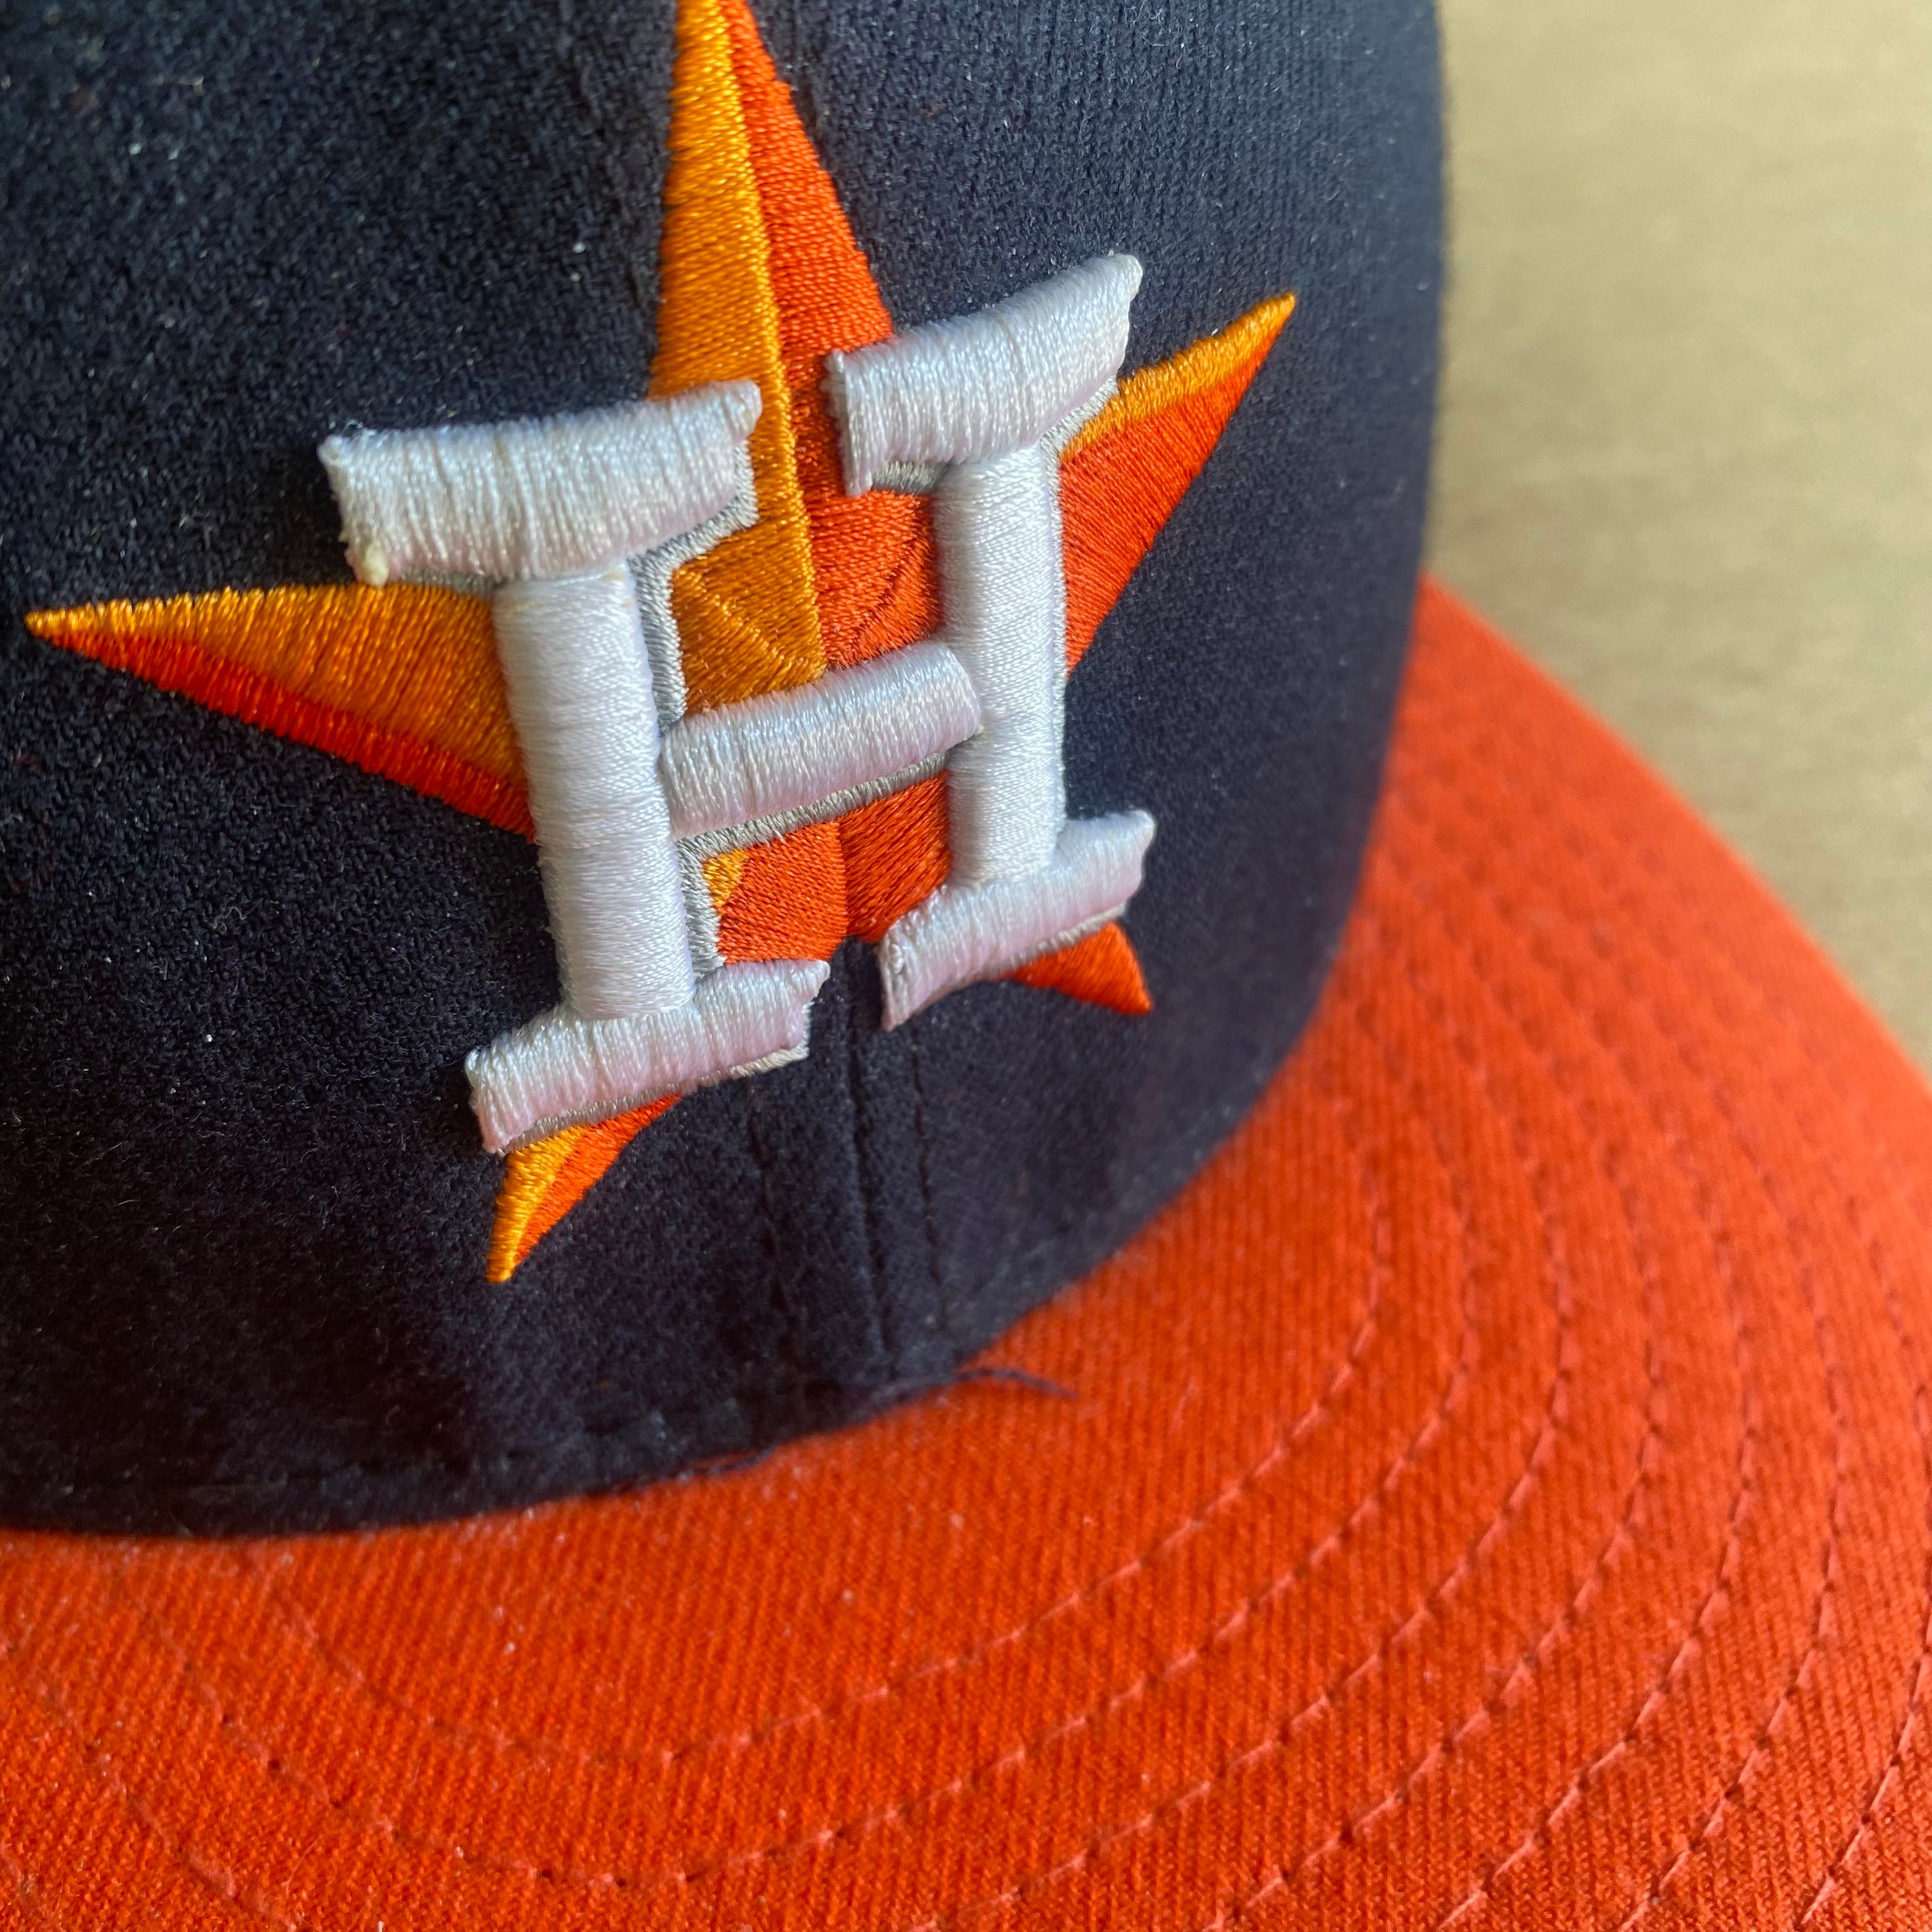 Secondhand New Era Houston Astros Hat